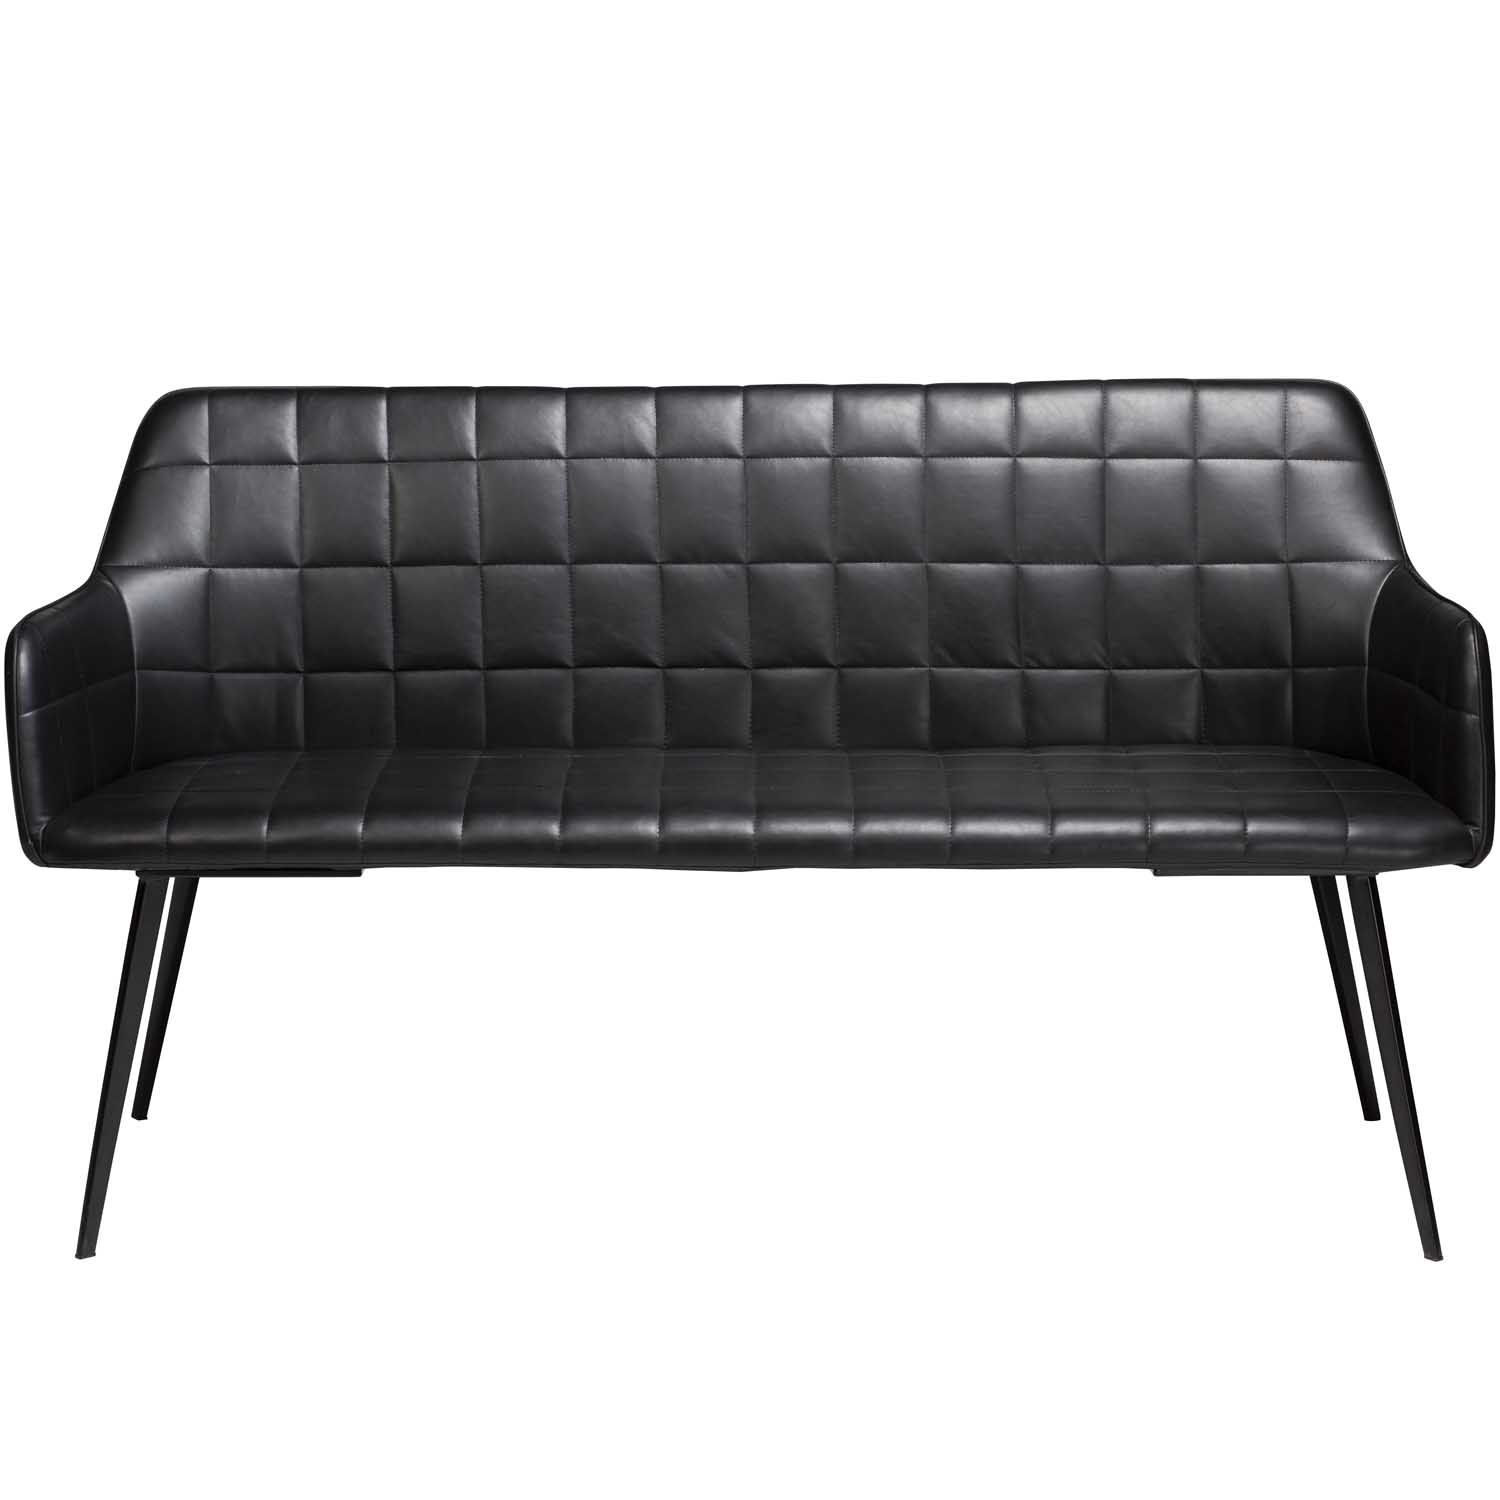 DAN-FORM Embrace sofabænk - vintage sort kunstlæder og sort stål